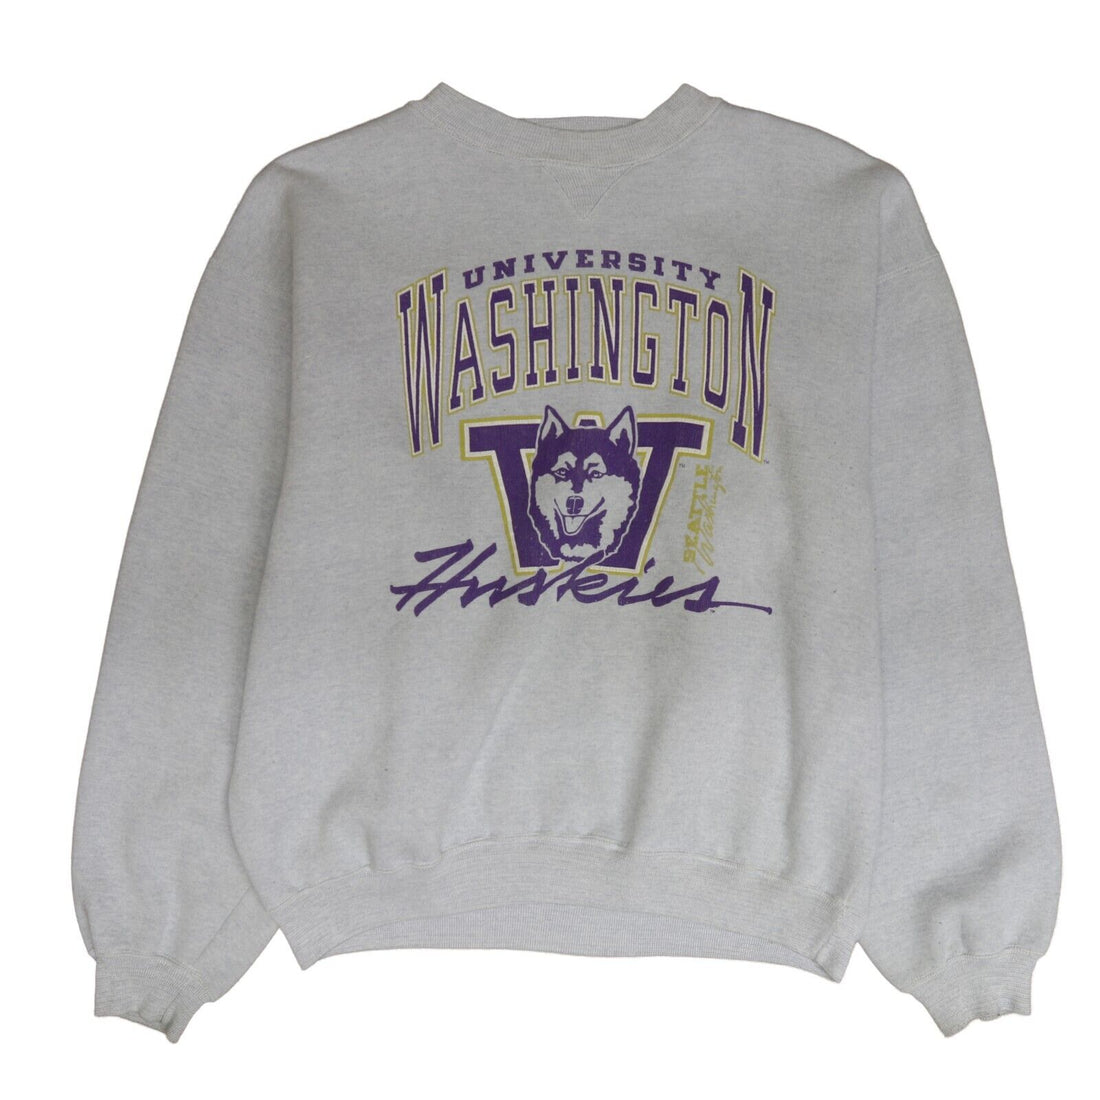 Vintage Washington Huskies Sweatshirt Crewneck Size 2XL 90s NCAA